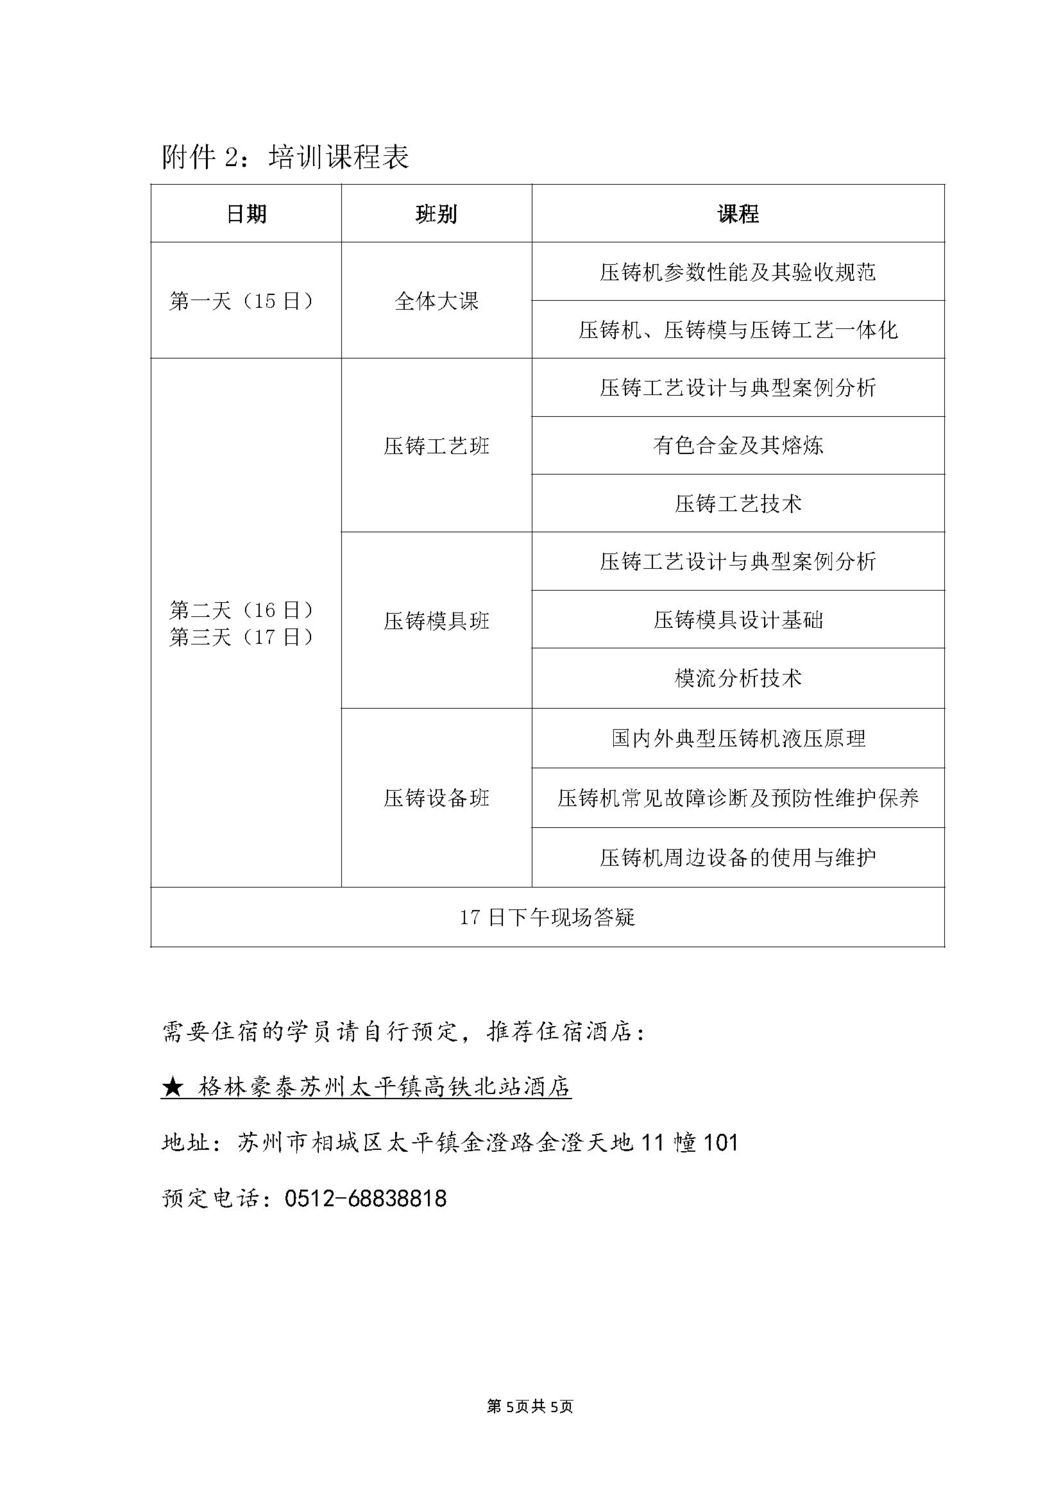 苏压协2020-10号：关于举办压铸技术冬季培训班（总第26期）的通知_页面_5.jpg